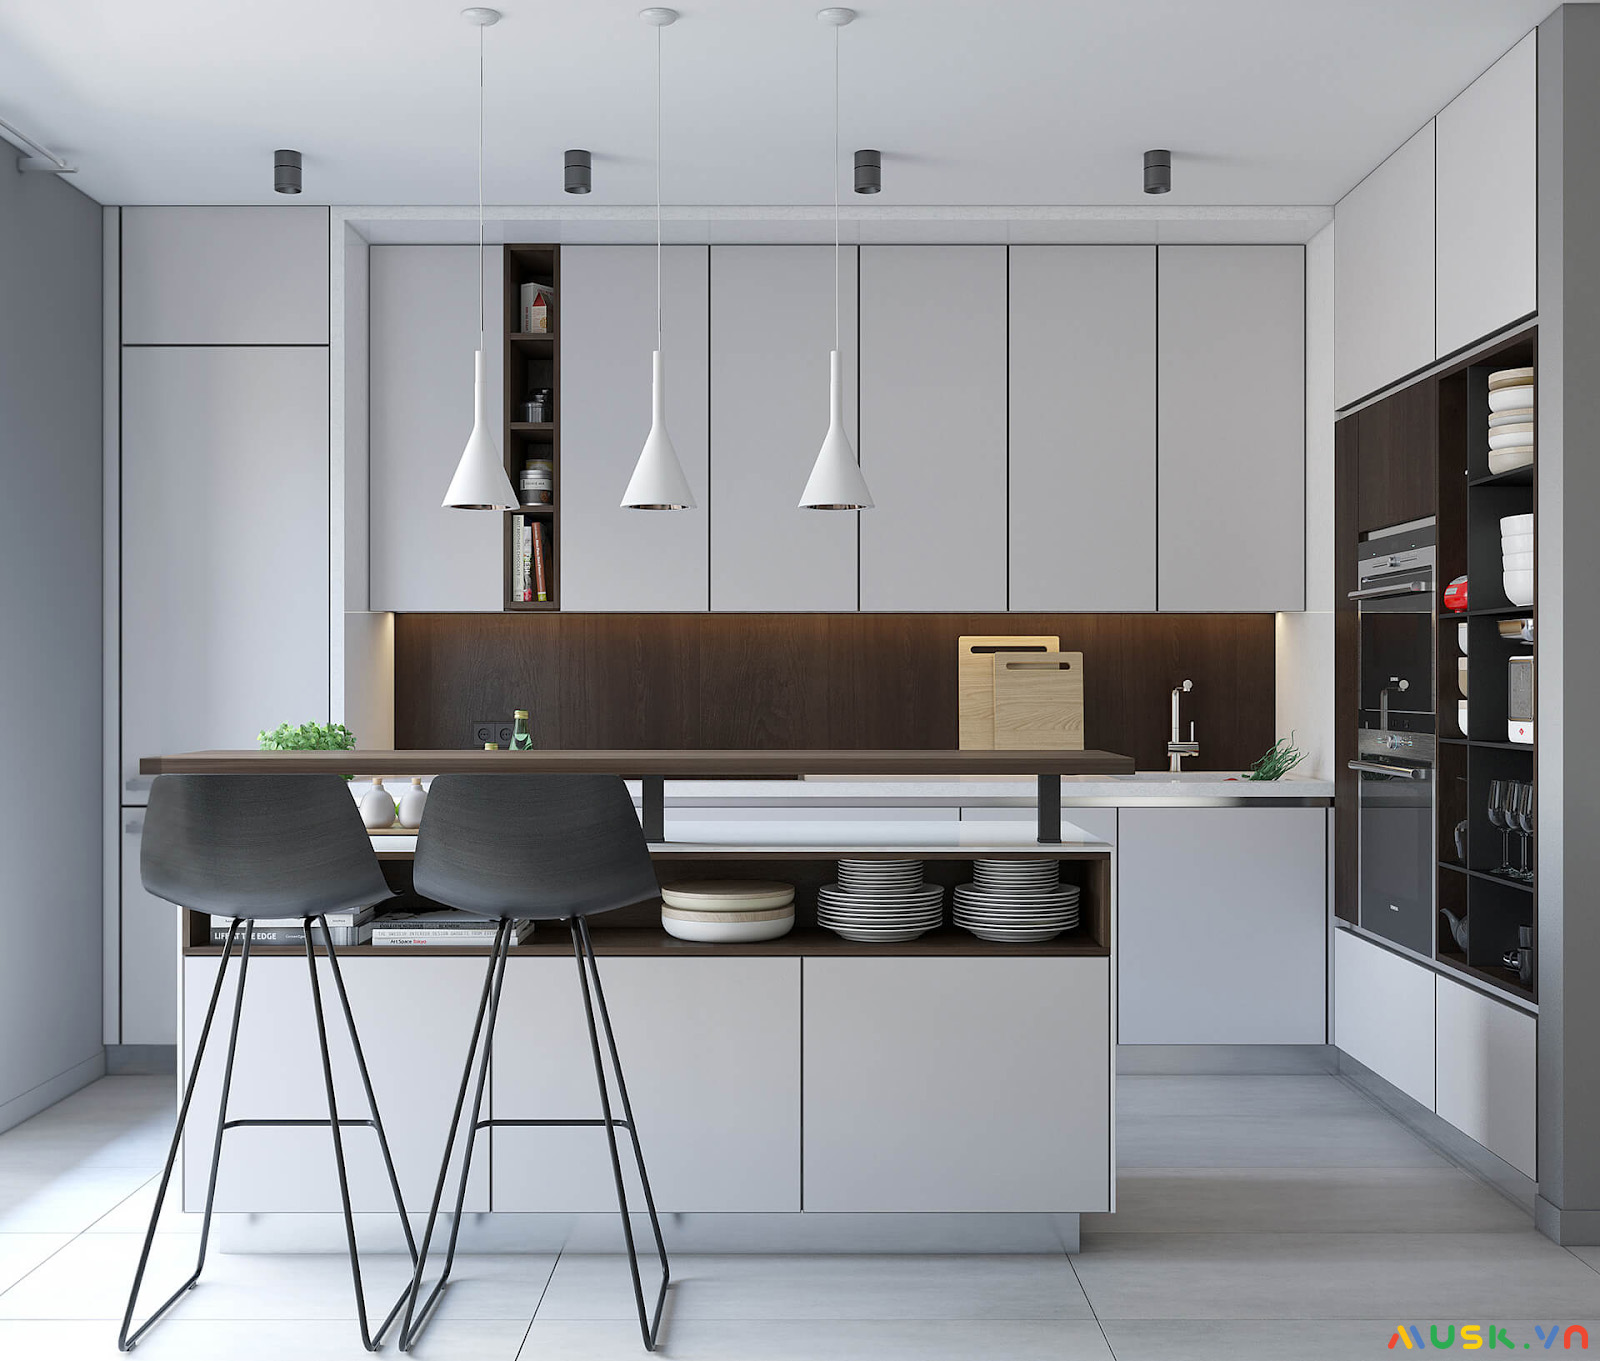 Mẫu phòng bếp phong cách nội thất minimalist nhỏ gọn tinh tế